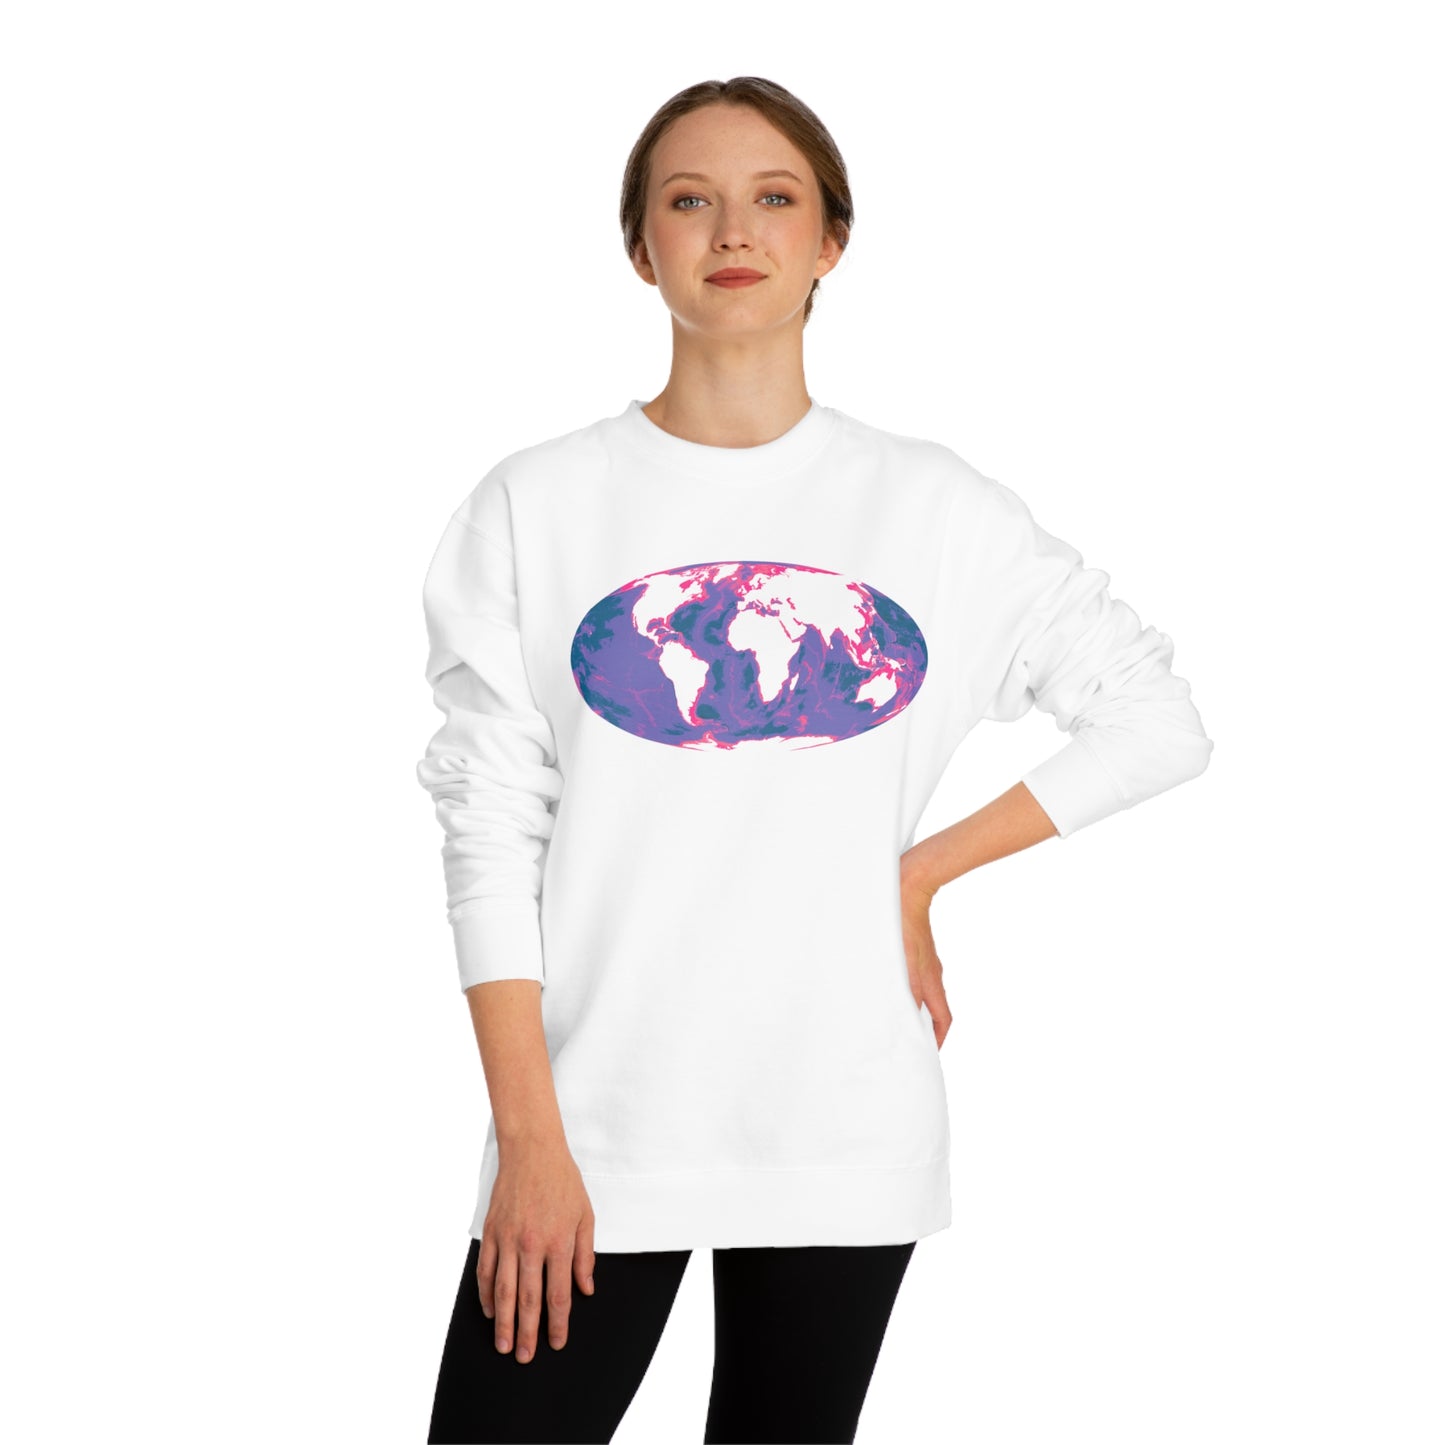 Ocean Floor World Map Crew Neck Sweatshirt